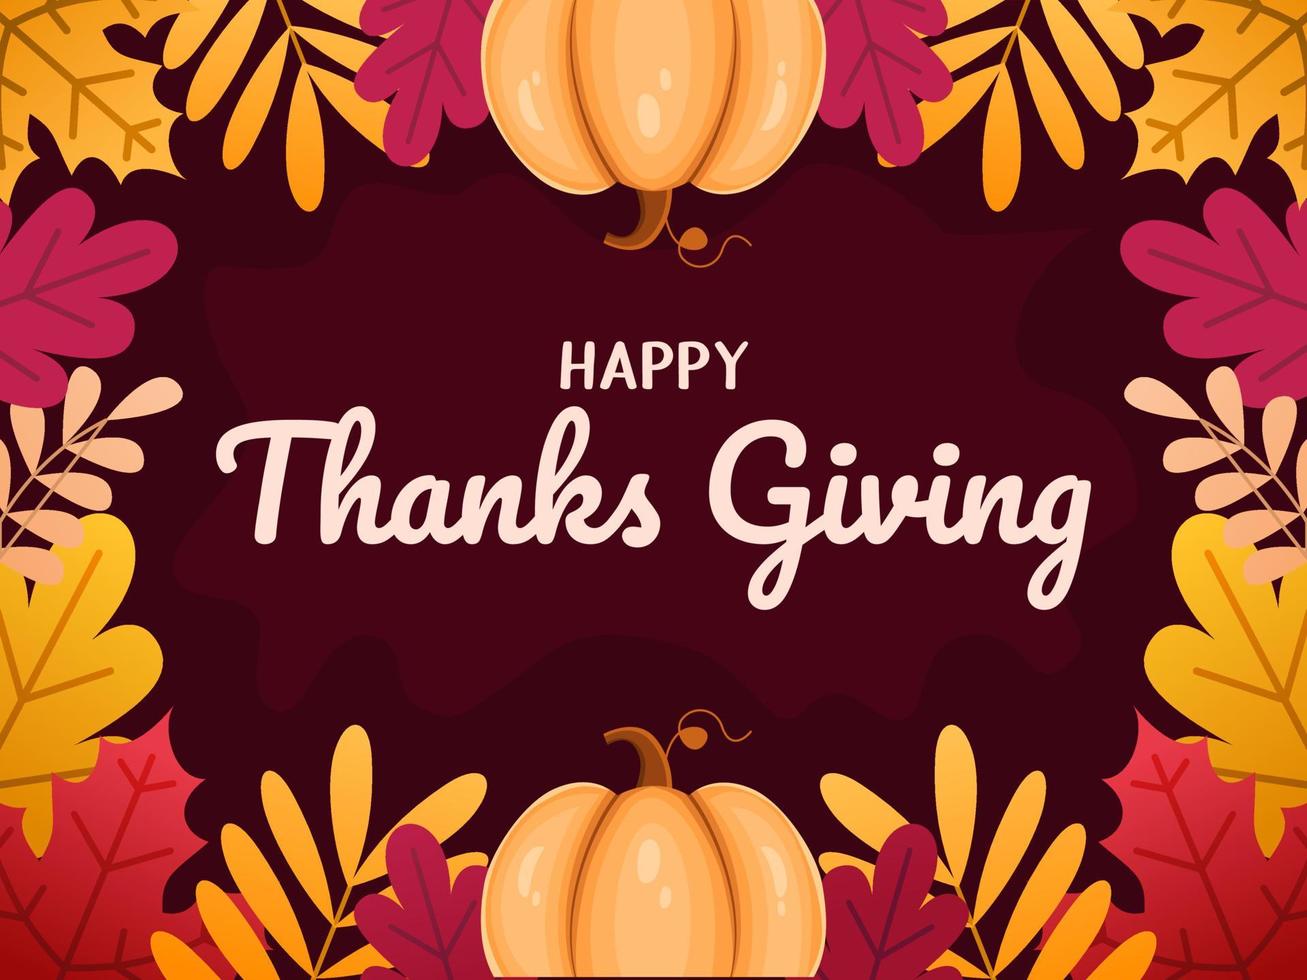 Thanksgiving-Grußkarten-Illustrationsdesign mit Blättern Blumen und Kürbis. glücklich danke geben, danke geben. kann auch für Banner, Poster, Web, Social Media, Print, Postkarten verwendet werden. vektor